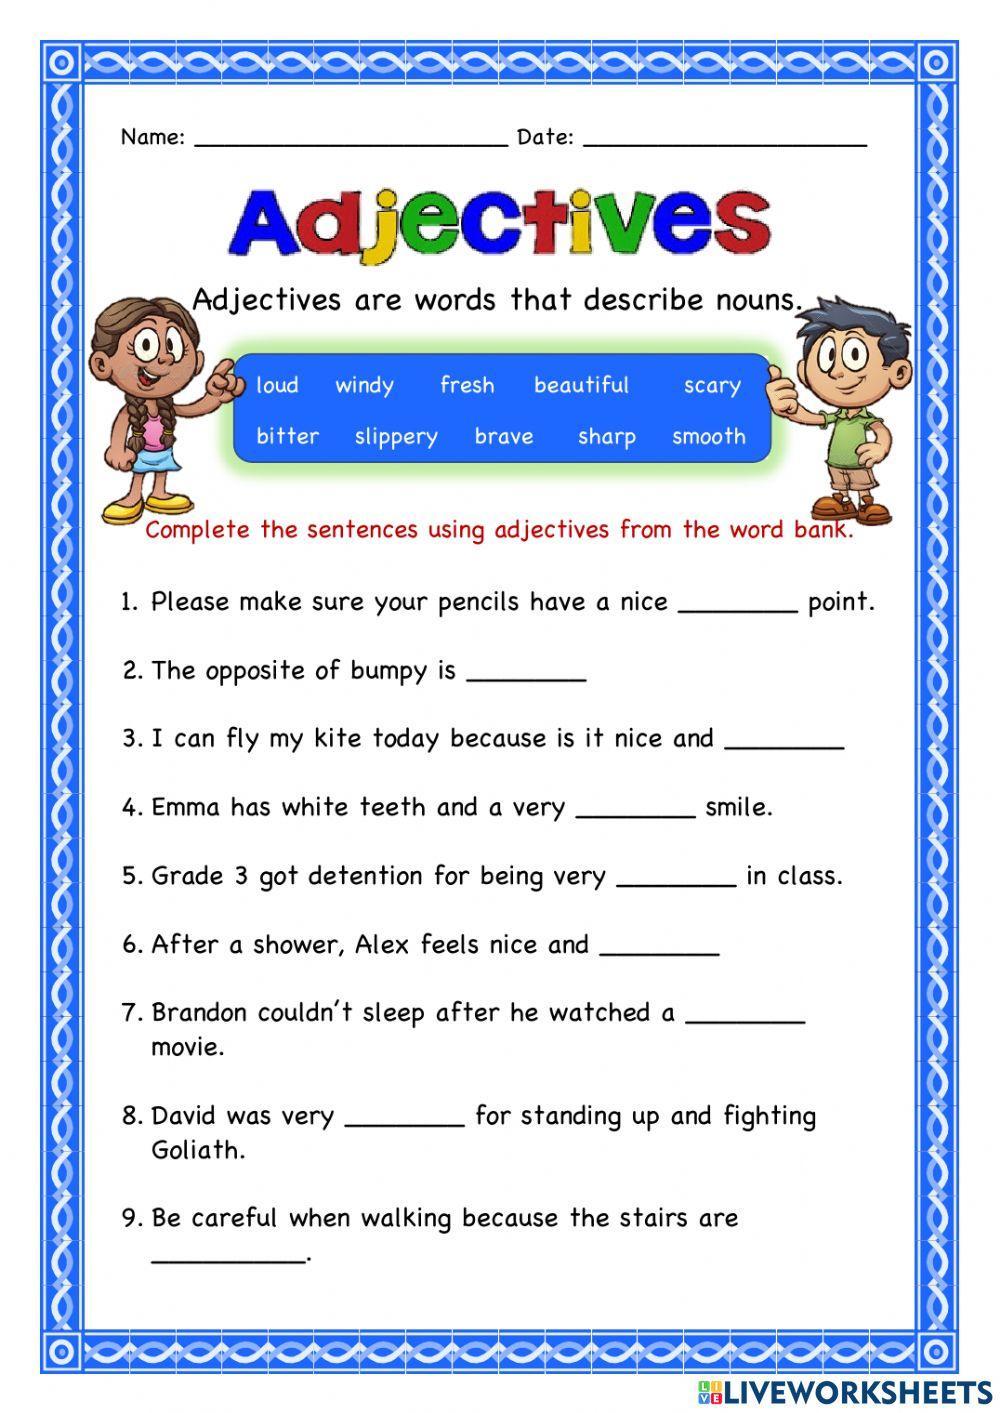 adjectives live worksheet grade 5